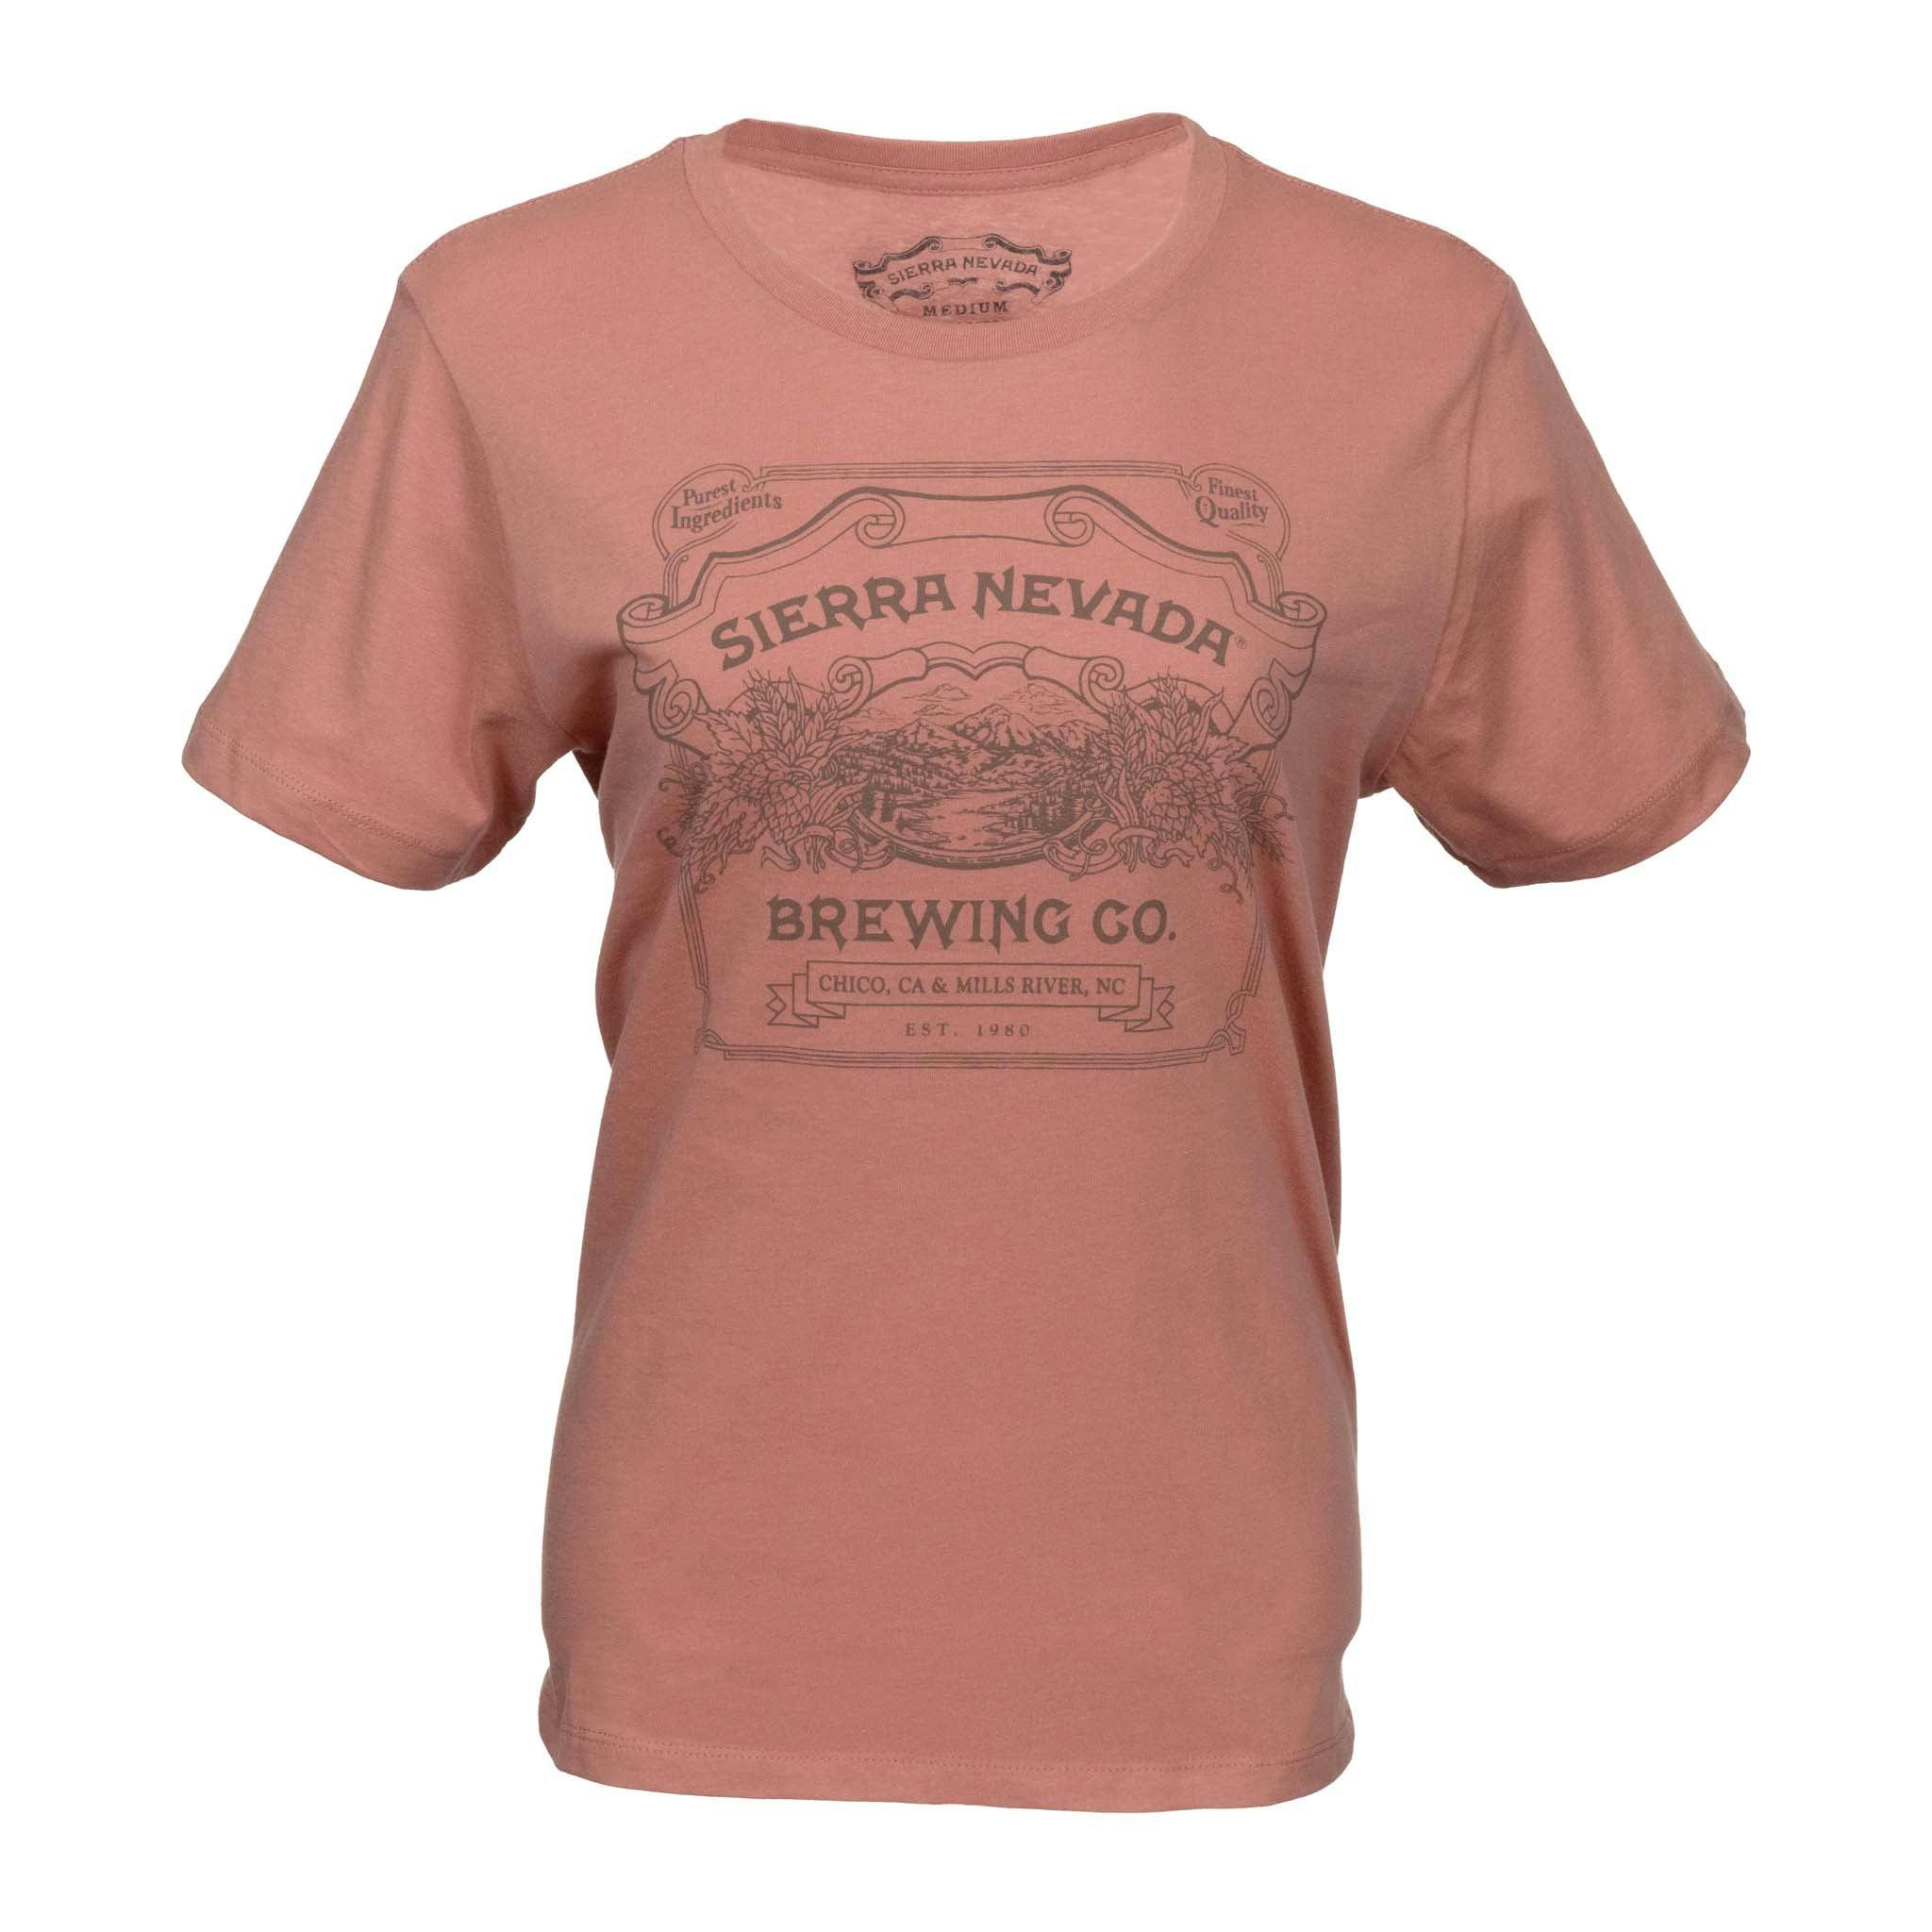 Sierra Nevada Women's Handcrafted Short Sleeve T-Shirt Desert Pink - Front view